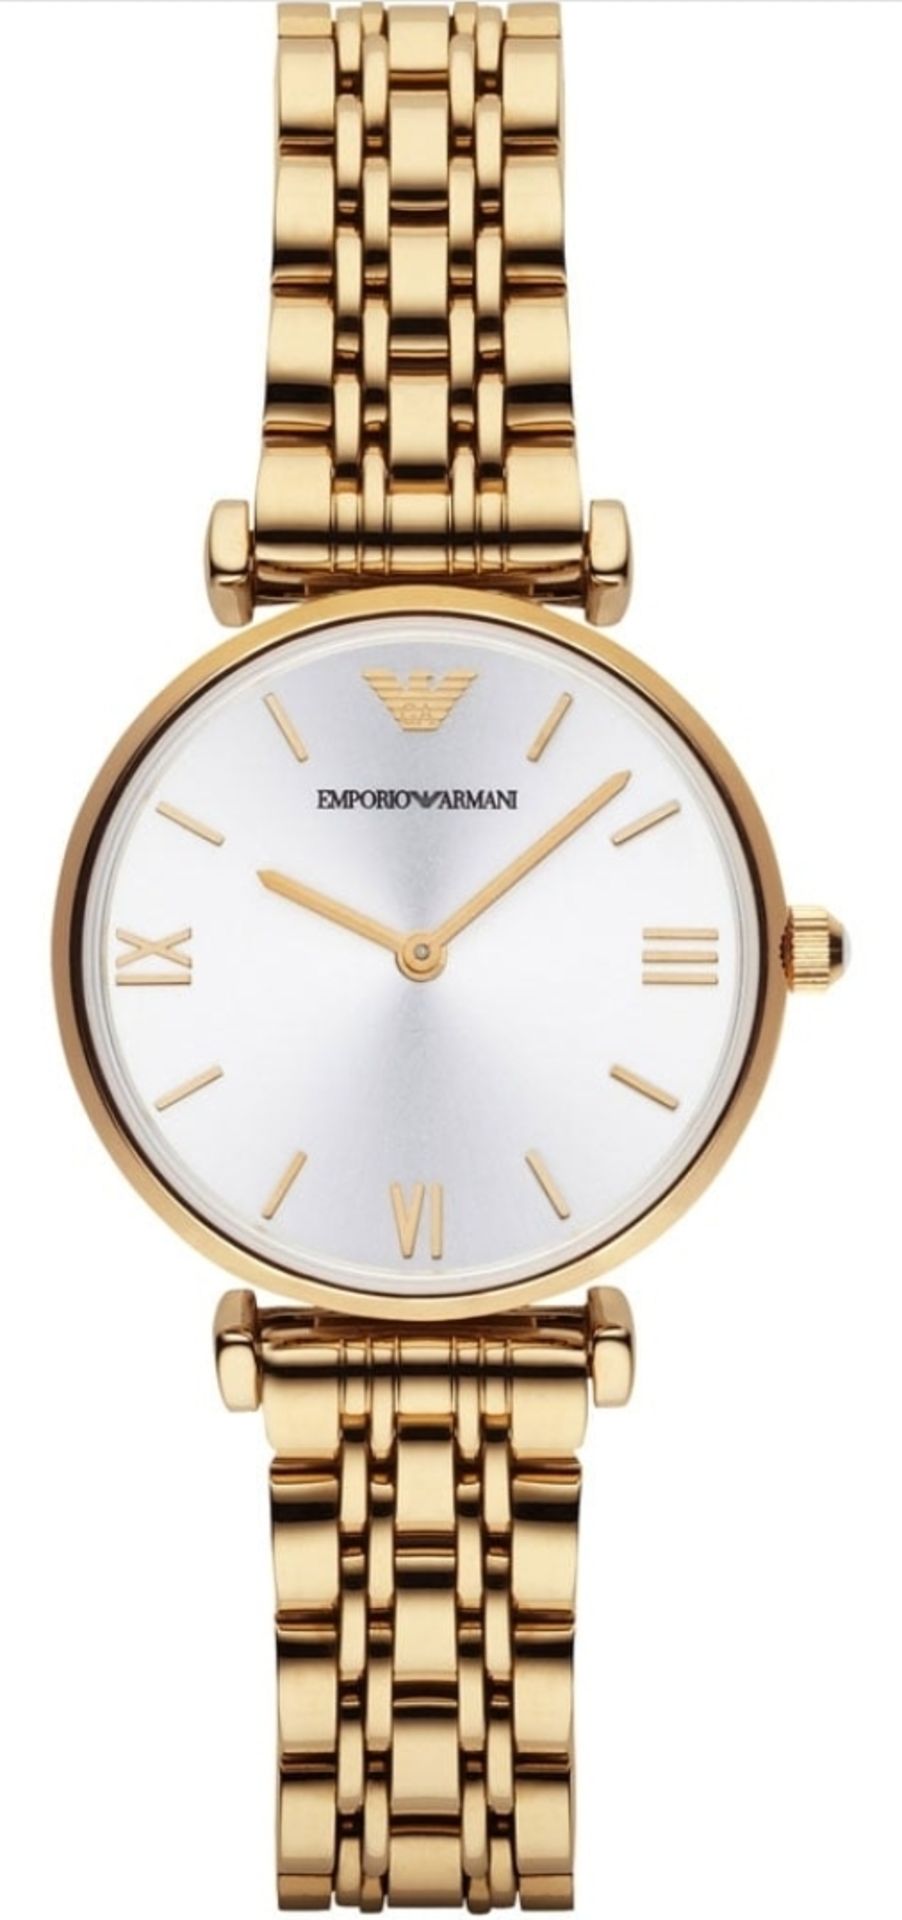 Emporio Armani AR1877 Ladies Gianni T-Bar Gold Tone Bracelet Designer Quartz Watch - Image 2 of 6